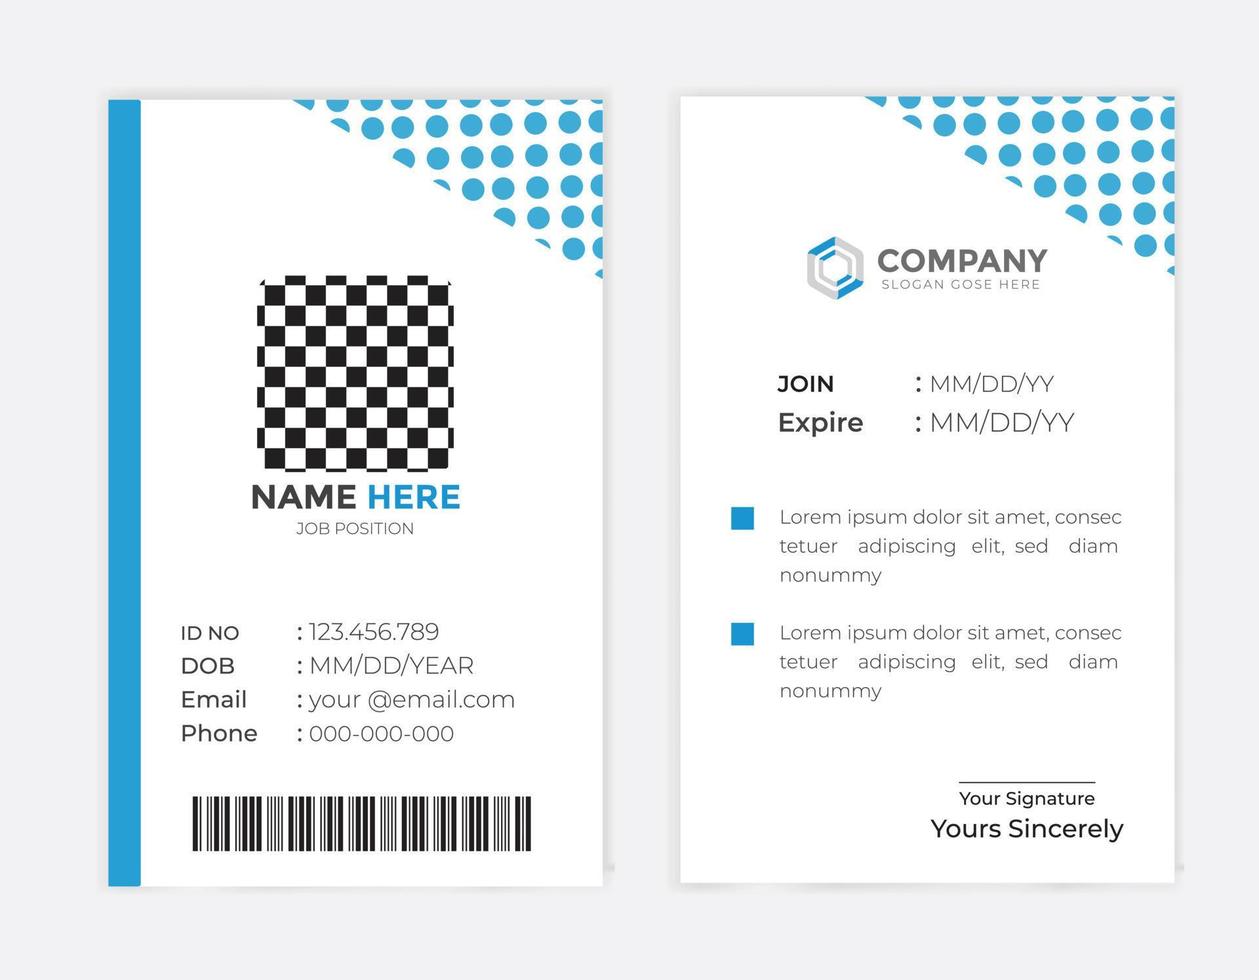 plantilla de tarjeta de identificación de empleado de empresa corporativa moderna y creativa vector